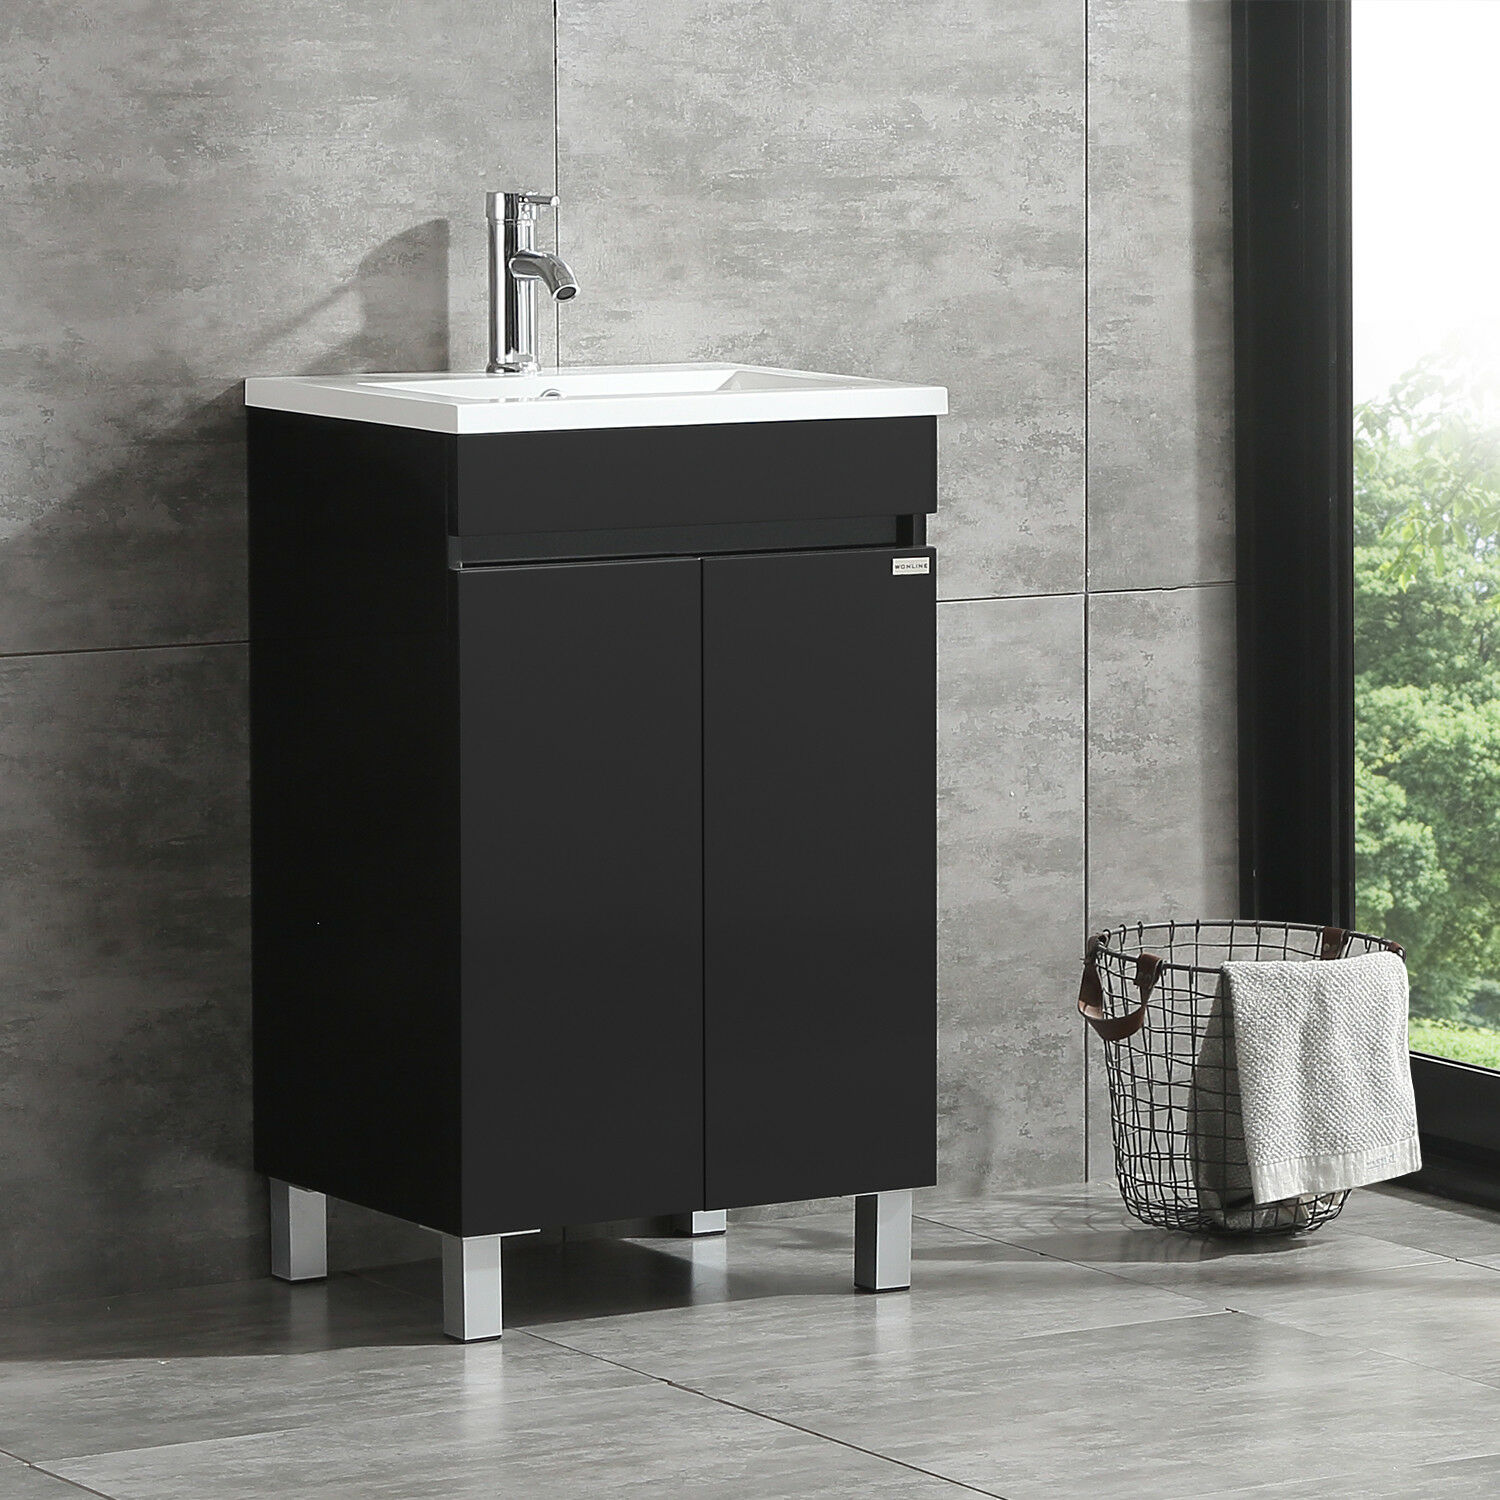 Buy Walcut Black Bathroom Vanity Cabinet Wood Storage With